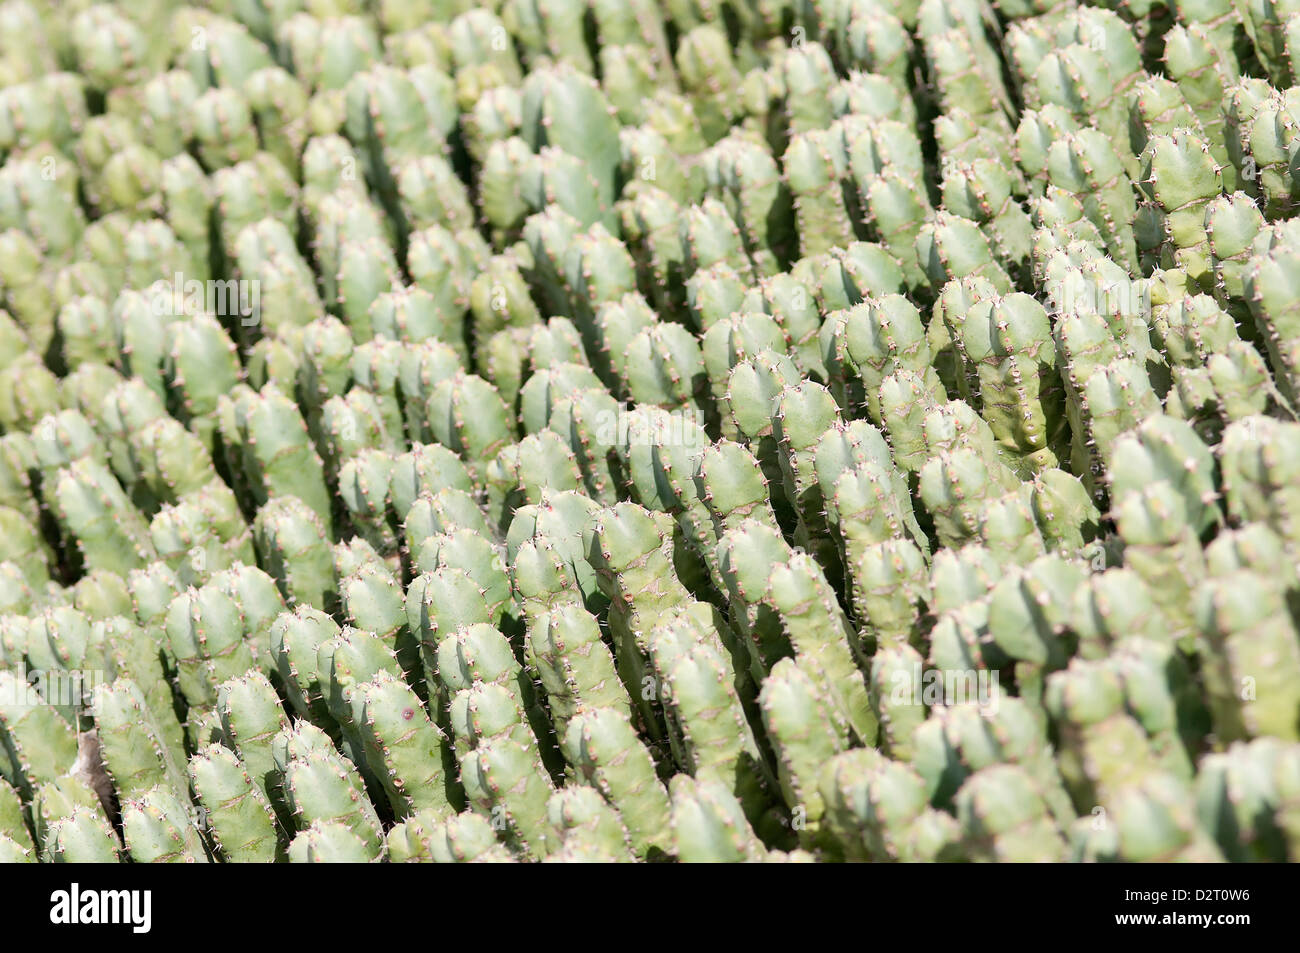 Mammillaria spinosissima, Cactus, Pincushion cactus, Green subject. Stock Photo